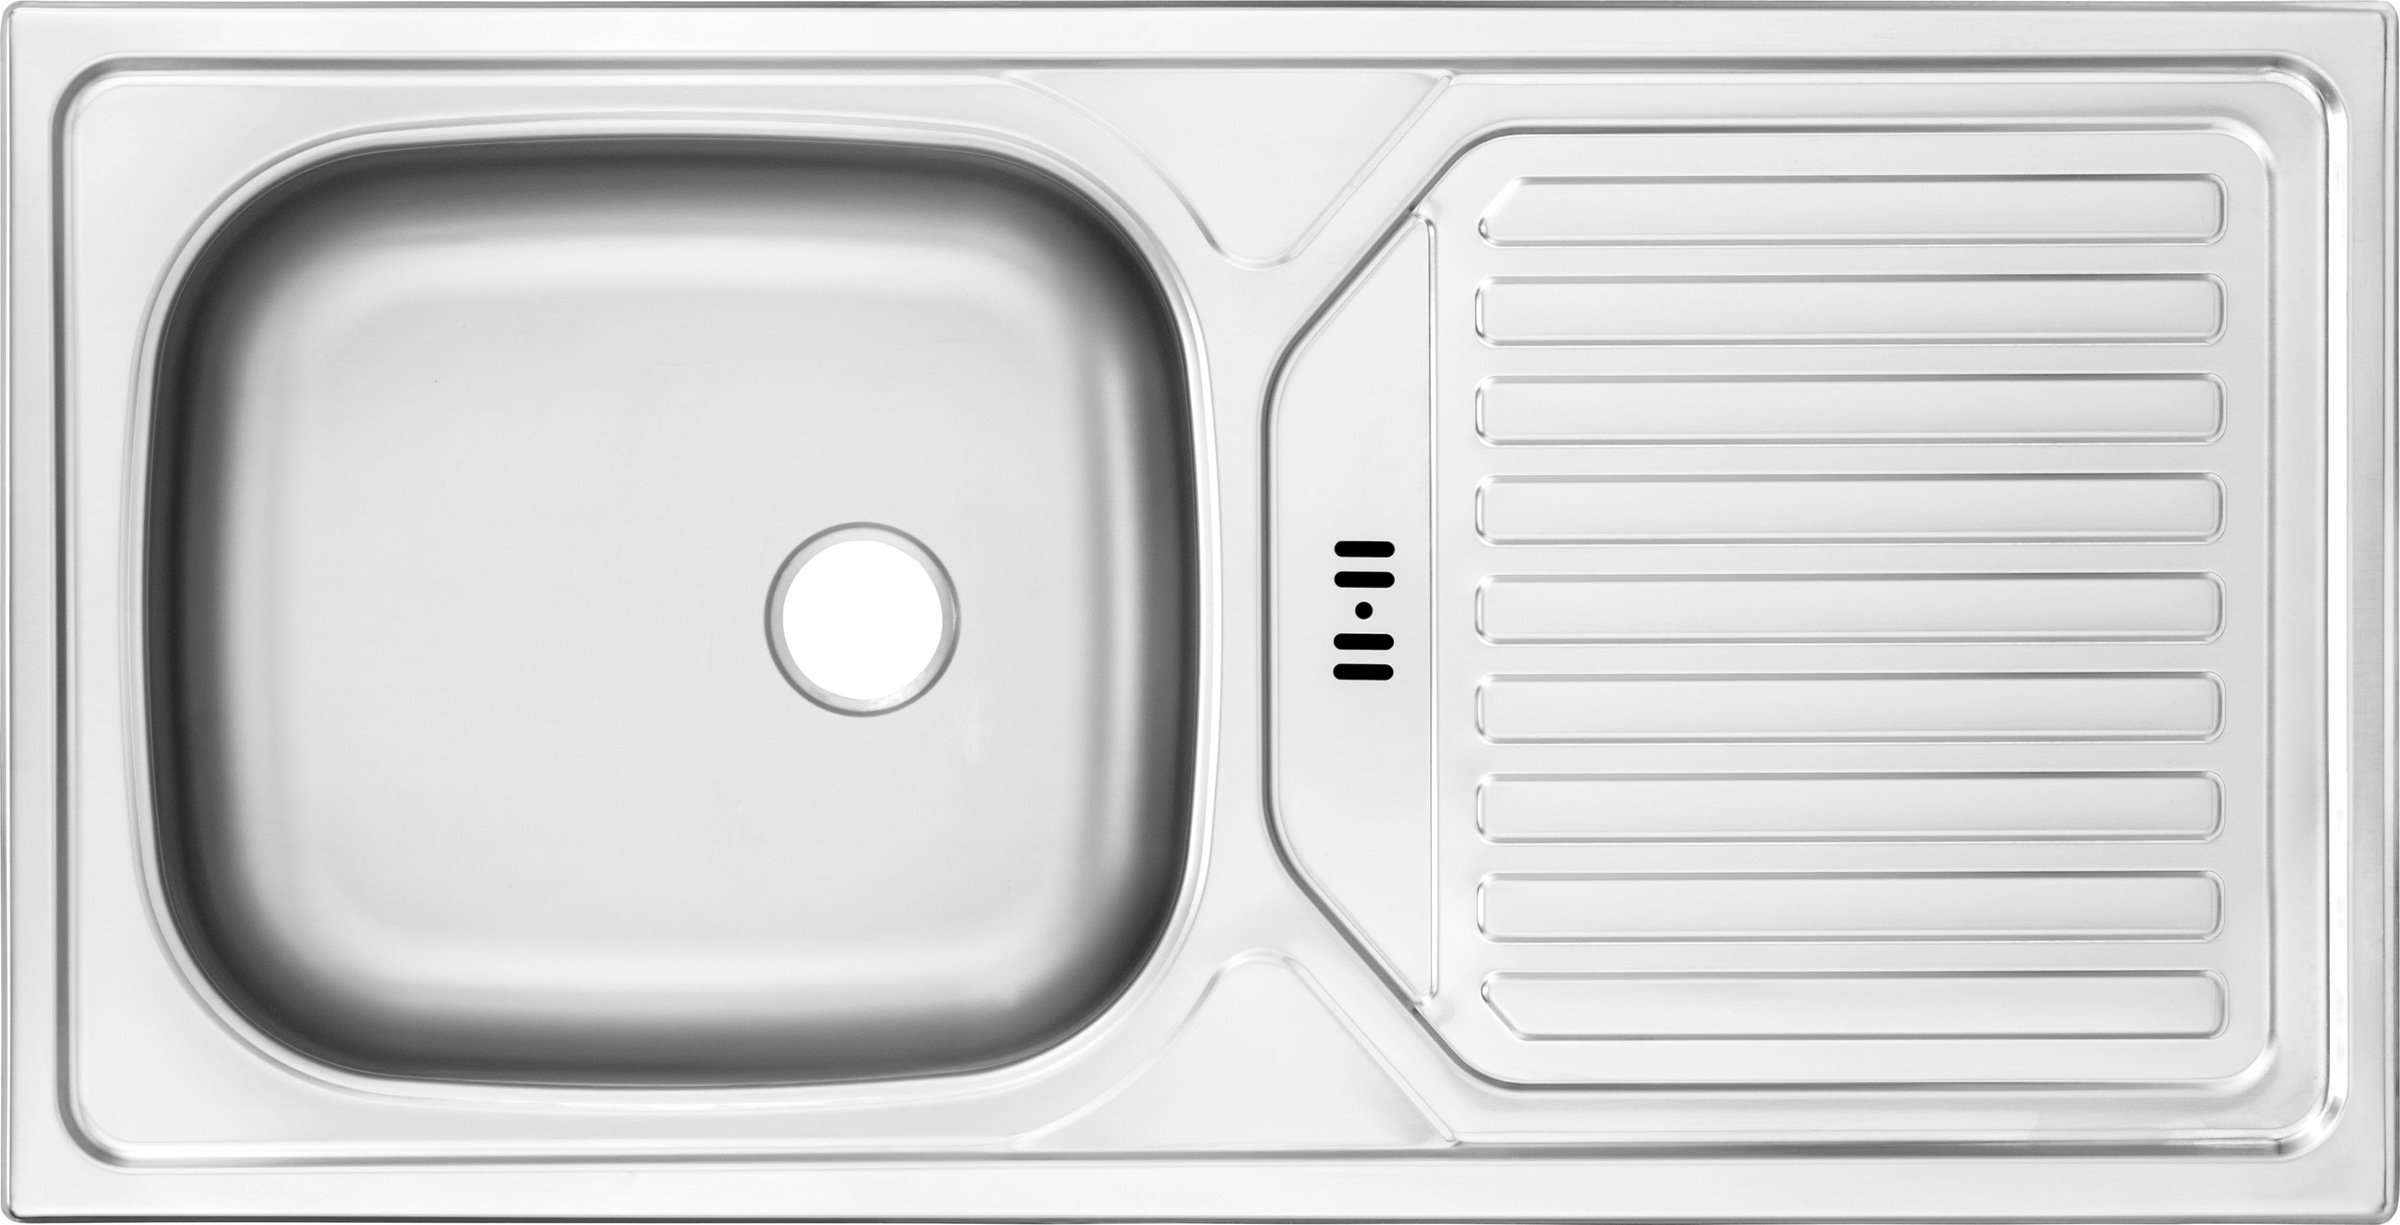 OPTIFIT Küchenzeile »Iver«, 270 cm breit, inkl. Elektrogeräte der Marke HANSEATIC, wahlweise mit oder ohne vollintegrierbaren Geschirrspüler